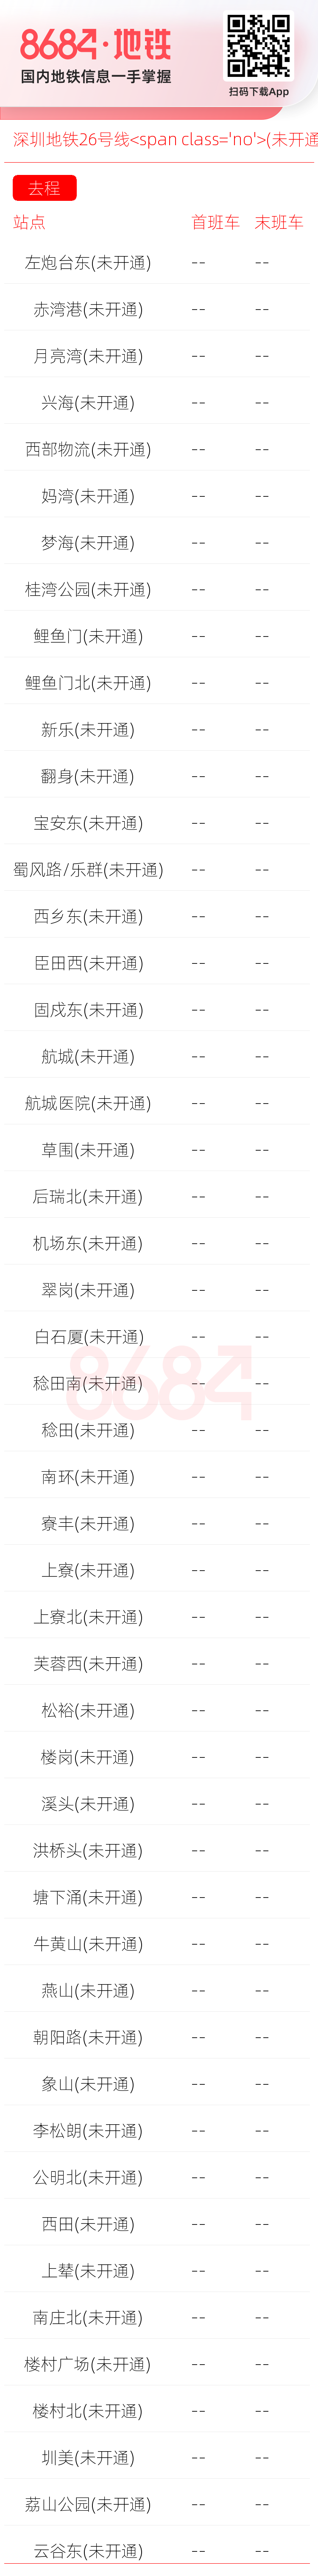 深圳地铁26号线<span class='no'>(未开通)</span>运营时间表